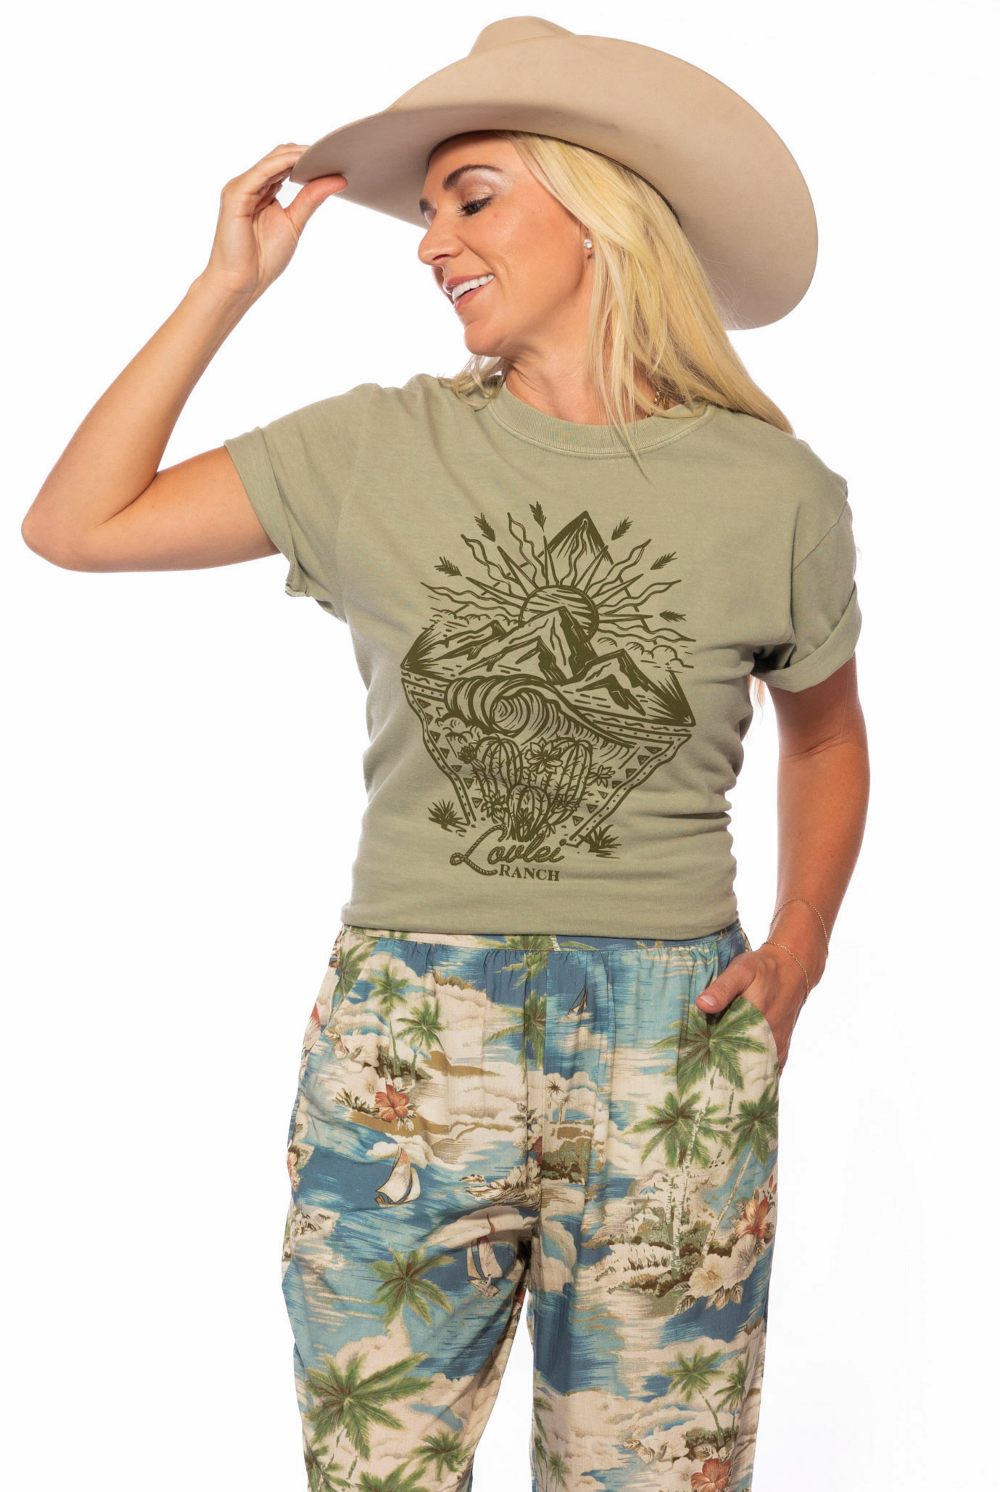 Tshirt - Coastal Ranch Graphic Tshirt